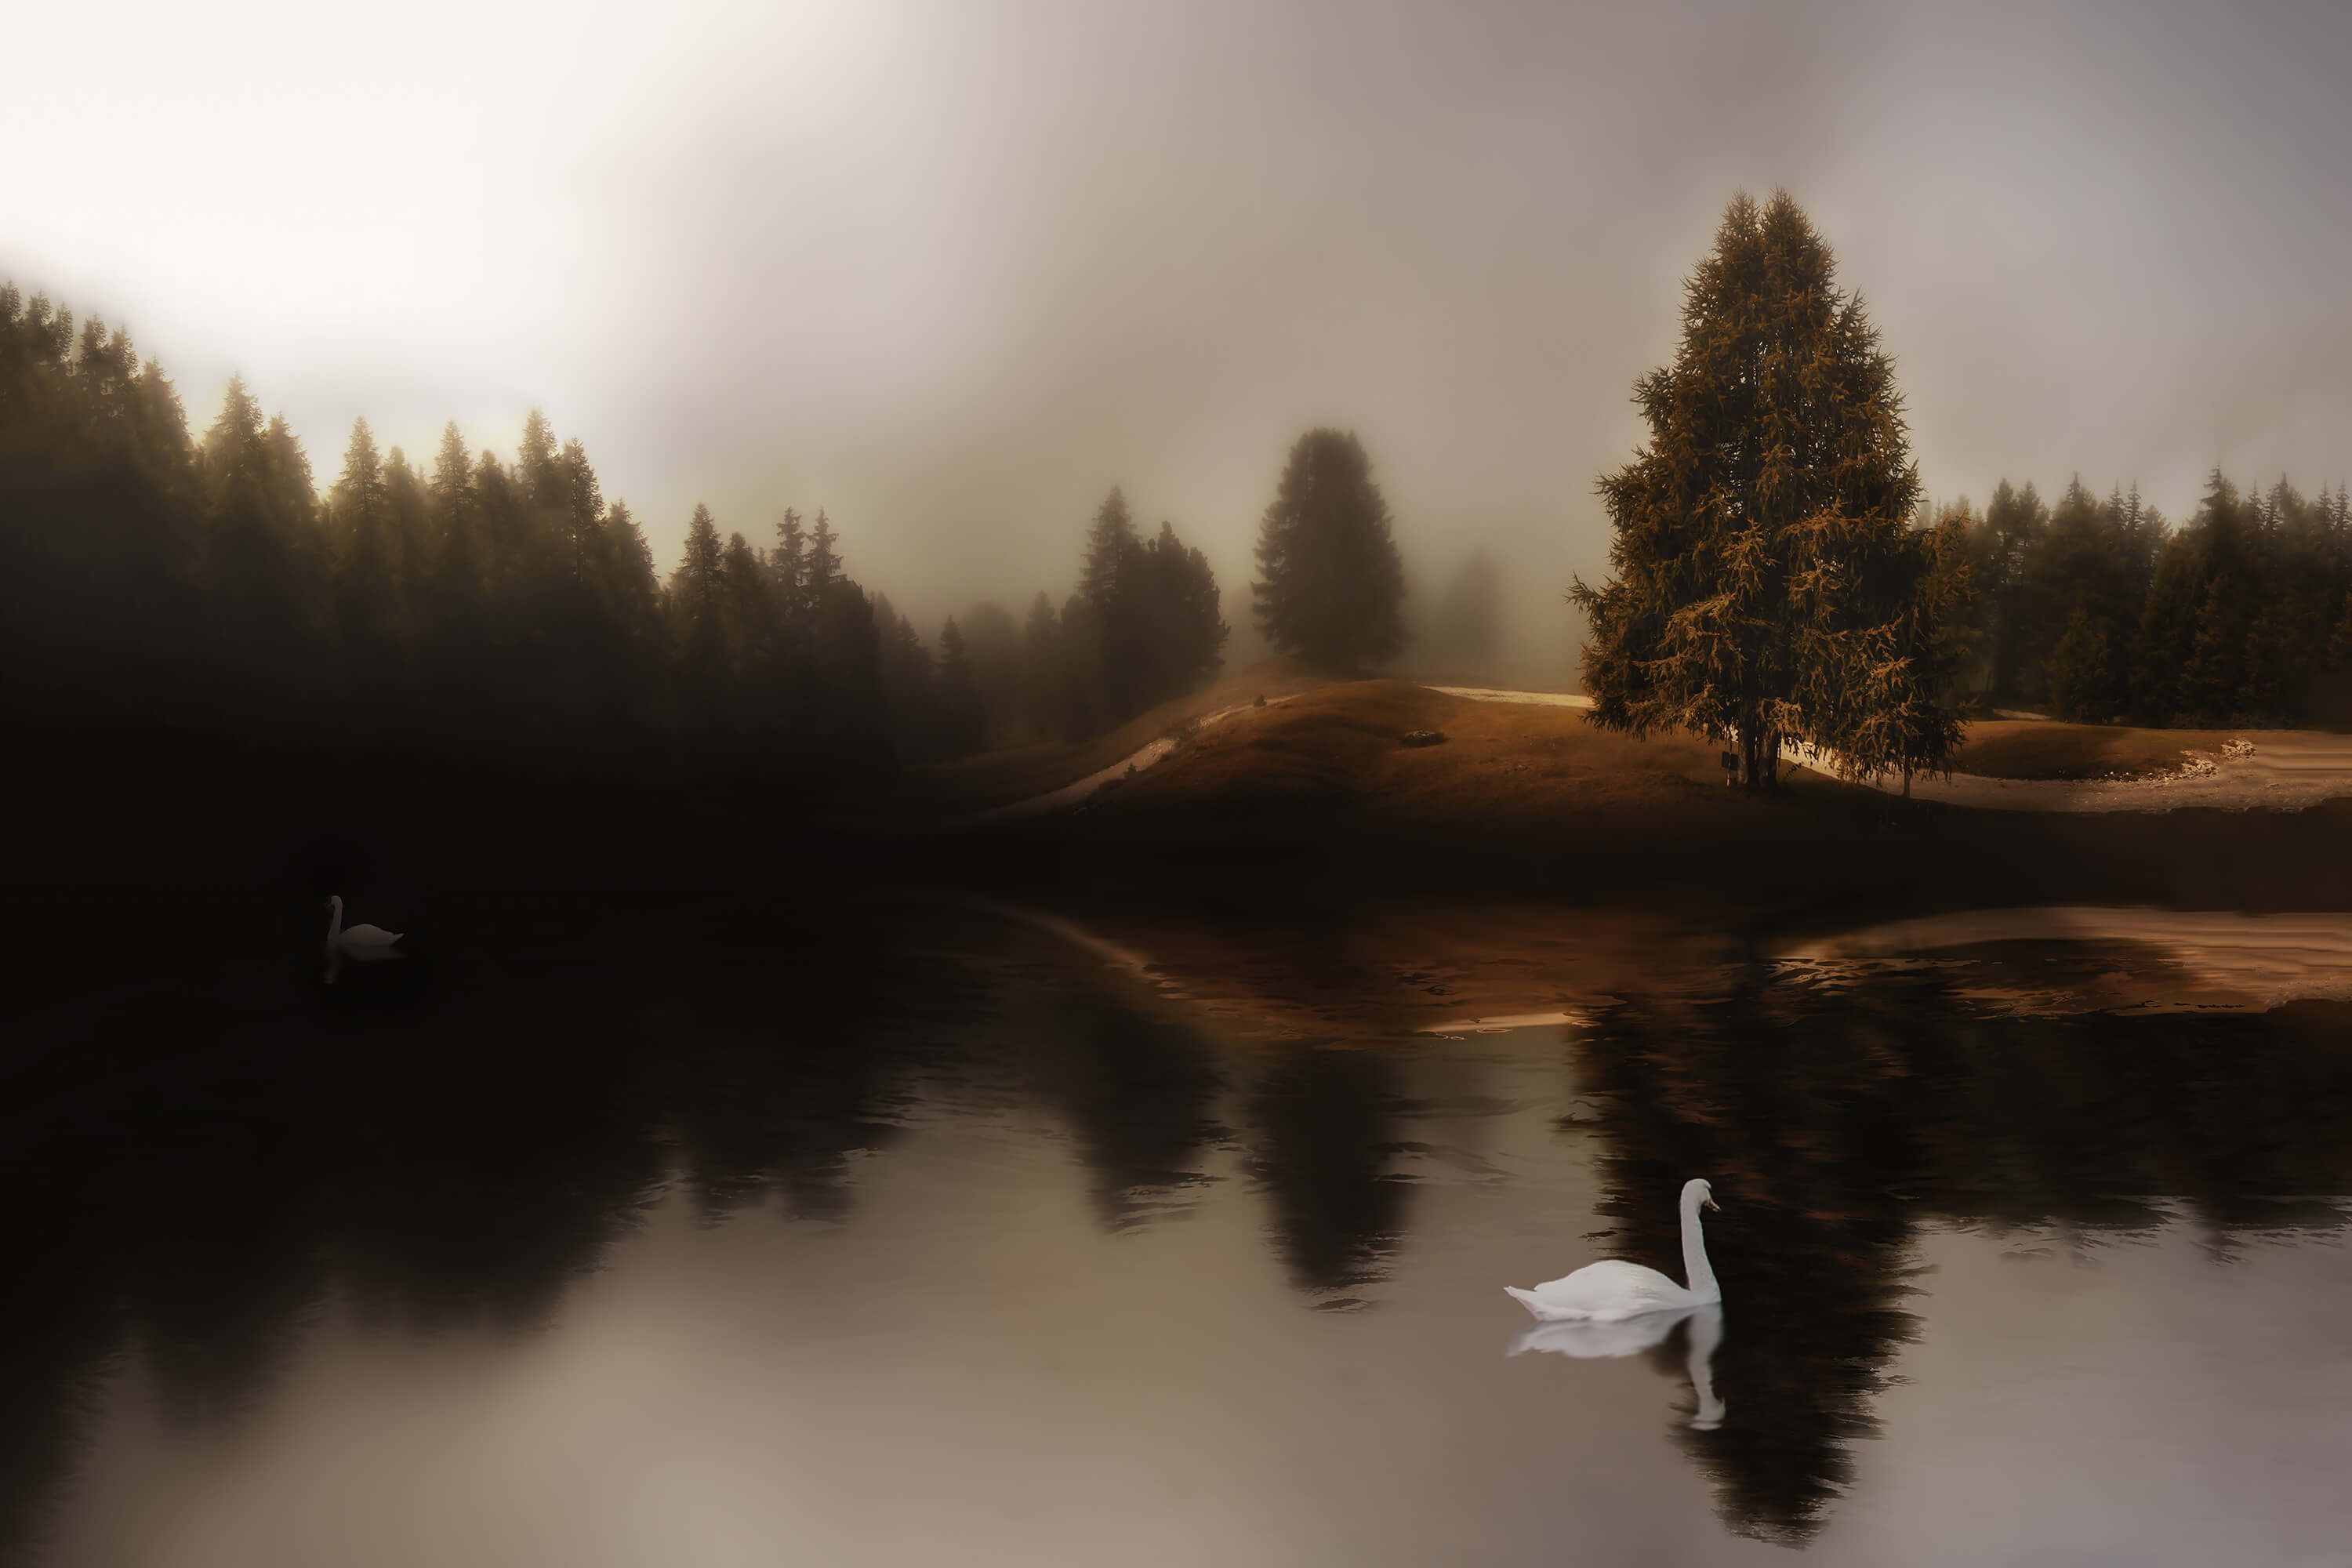  Papel pintado con El lago de los cisnes - Salón